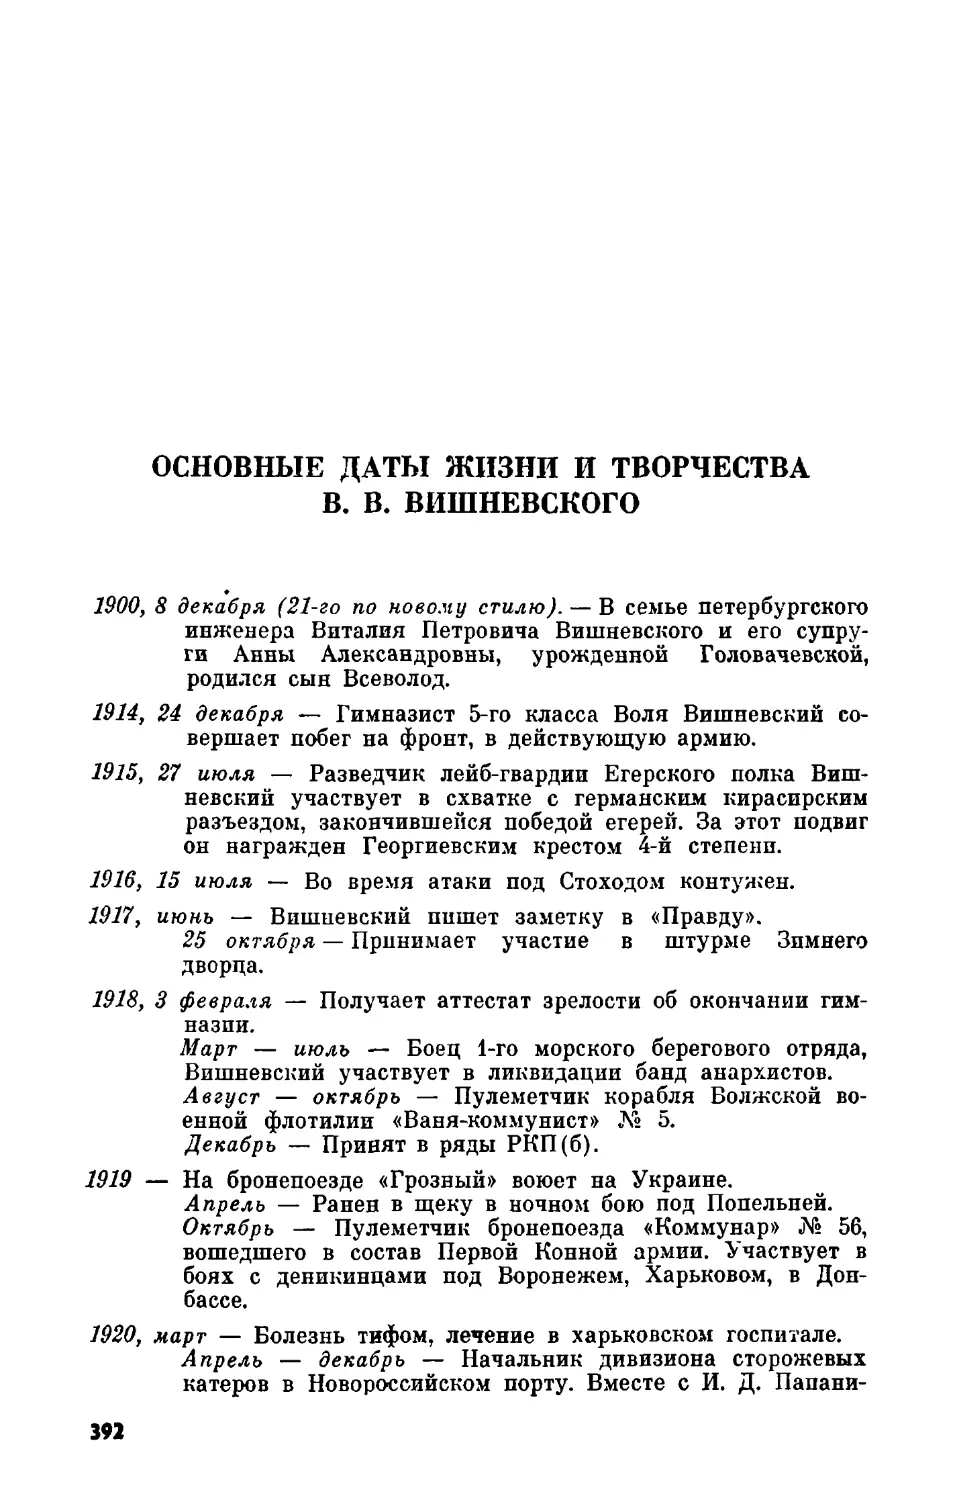 Основные даты жизни и творчества В. В. Вишневского